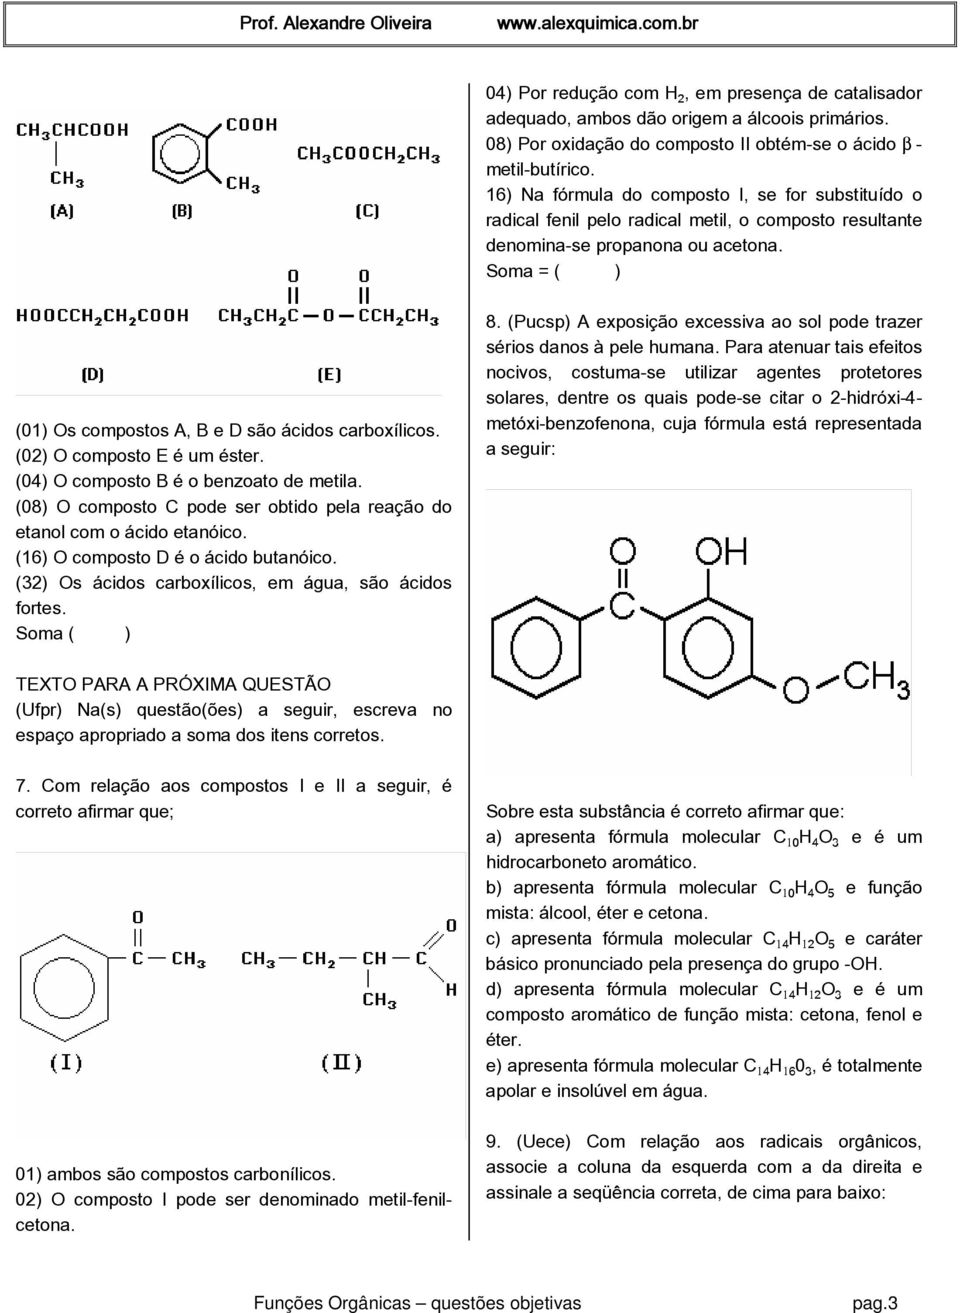 Soma = ( ) (01) Os compostos A, B e D são ácidos carboxílicos. (02) O composto E é um éster. (04) O composto B é o benzoato de metila.